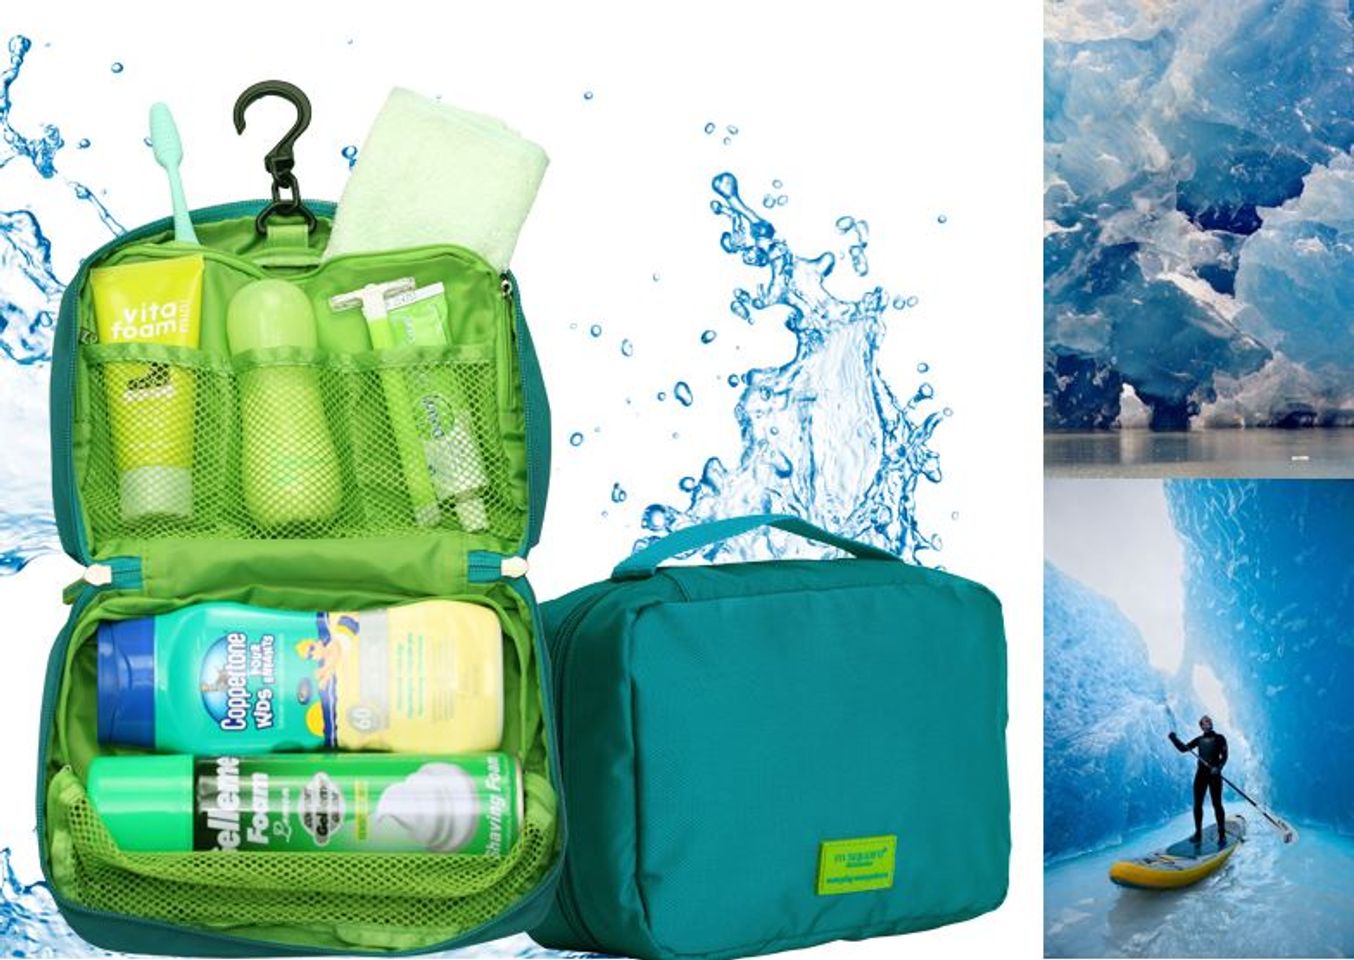 Chất liệu của túi đựng mỹ phẩm chống nước Msquare giúp bảo vệ đồ trang điểm và mỹ phẩm của bạn tốt hơn